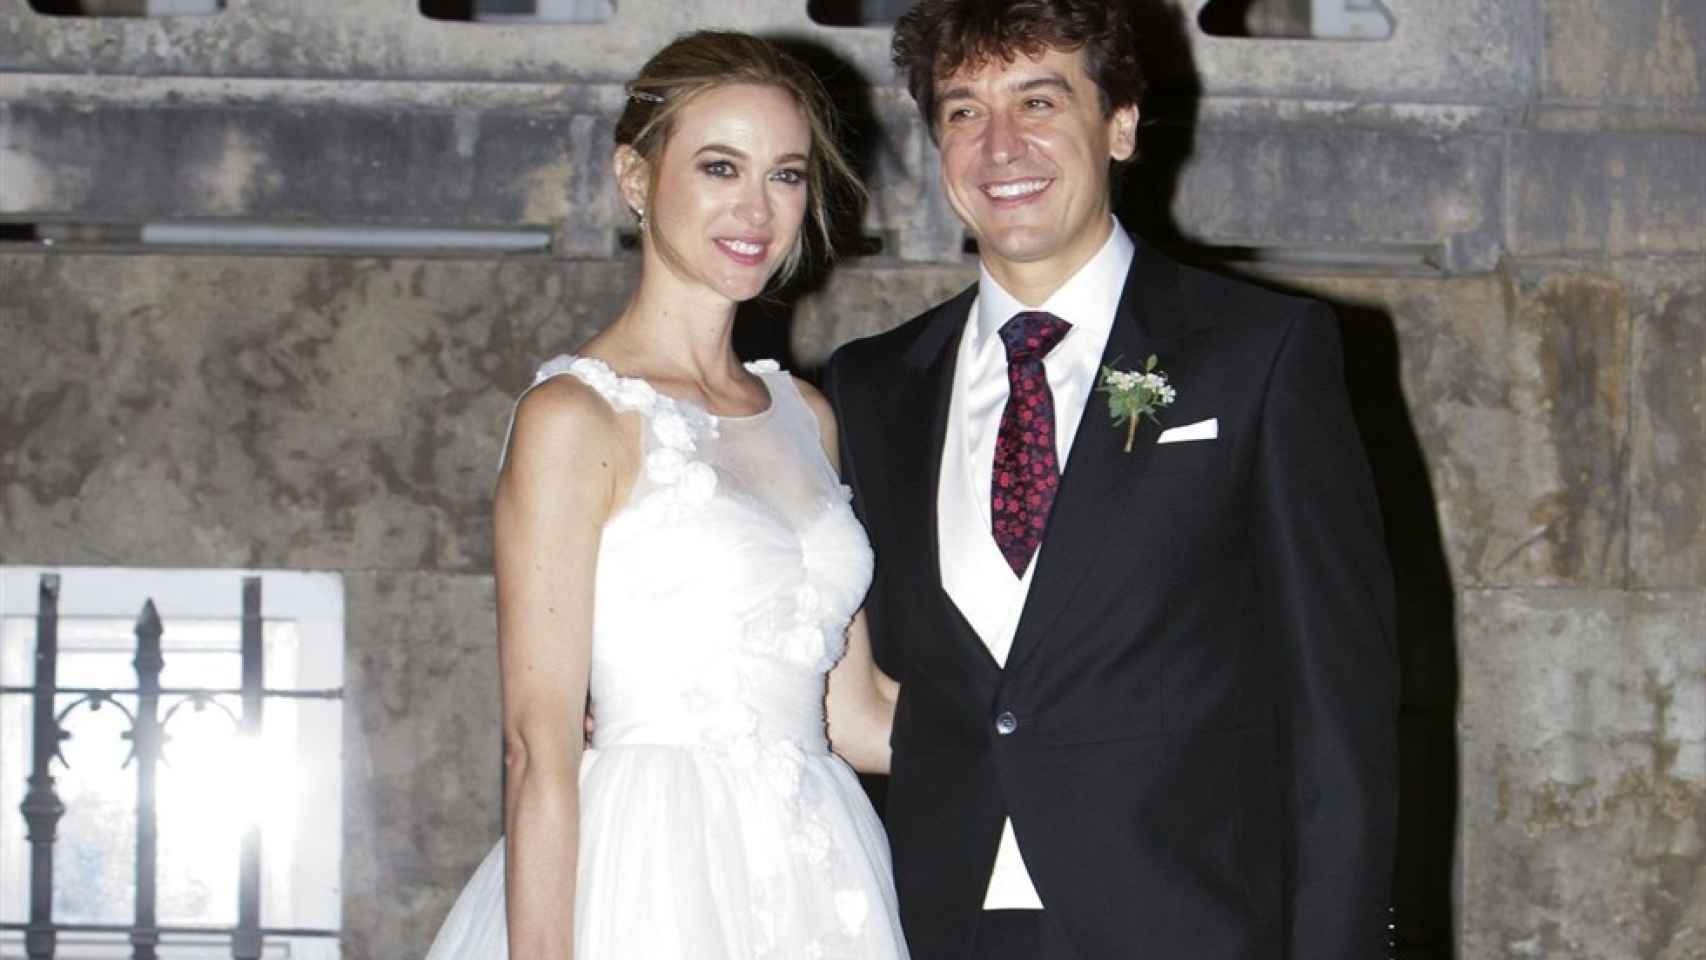 La boda de Marta Hazas y Javier Veiga.